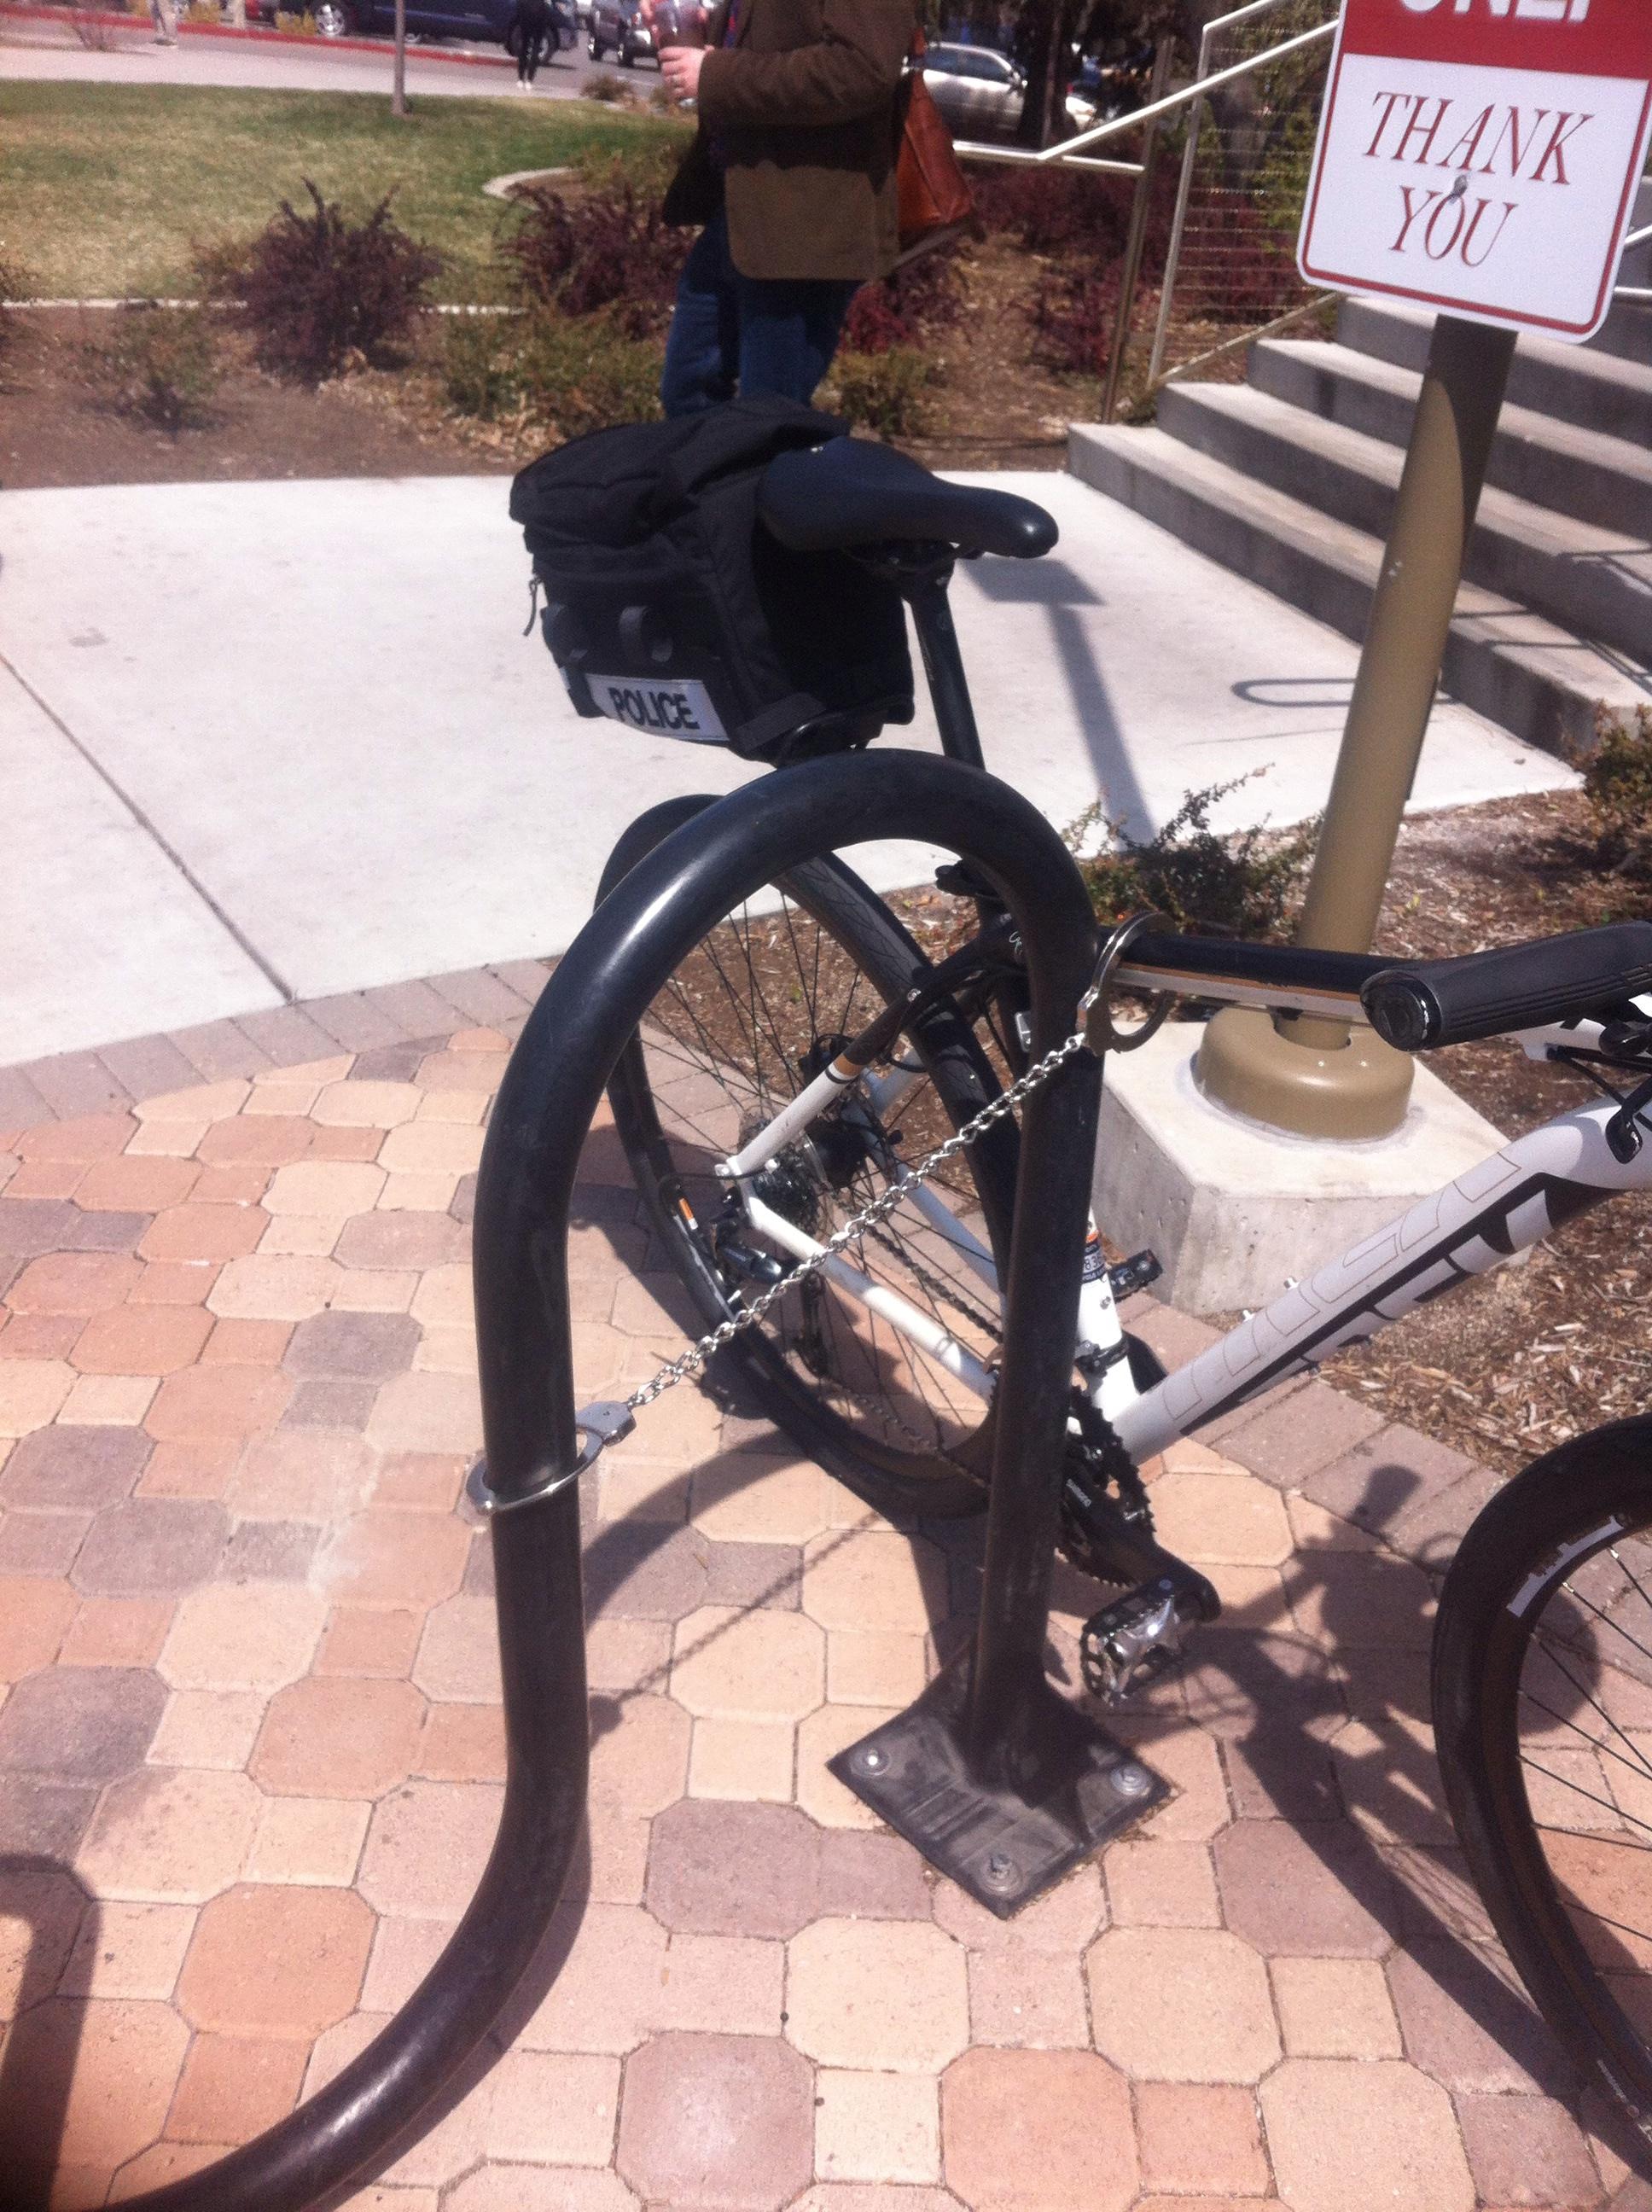 Police improvising bike lock